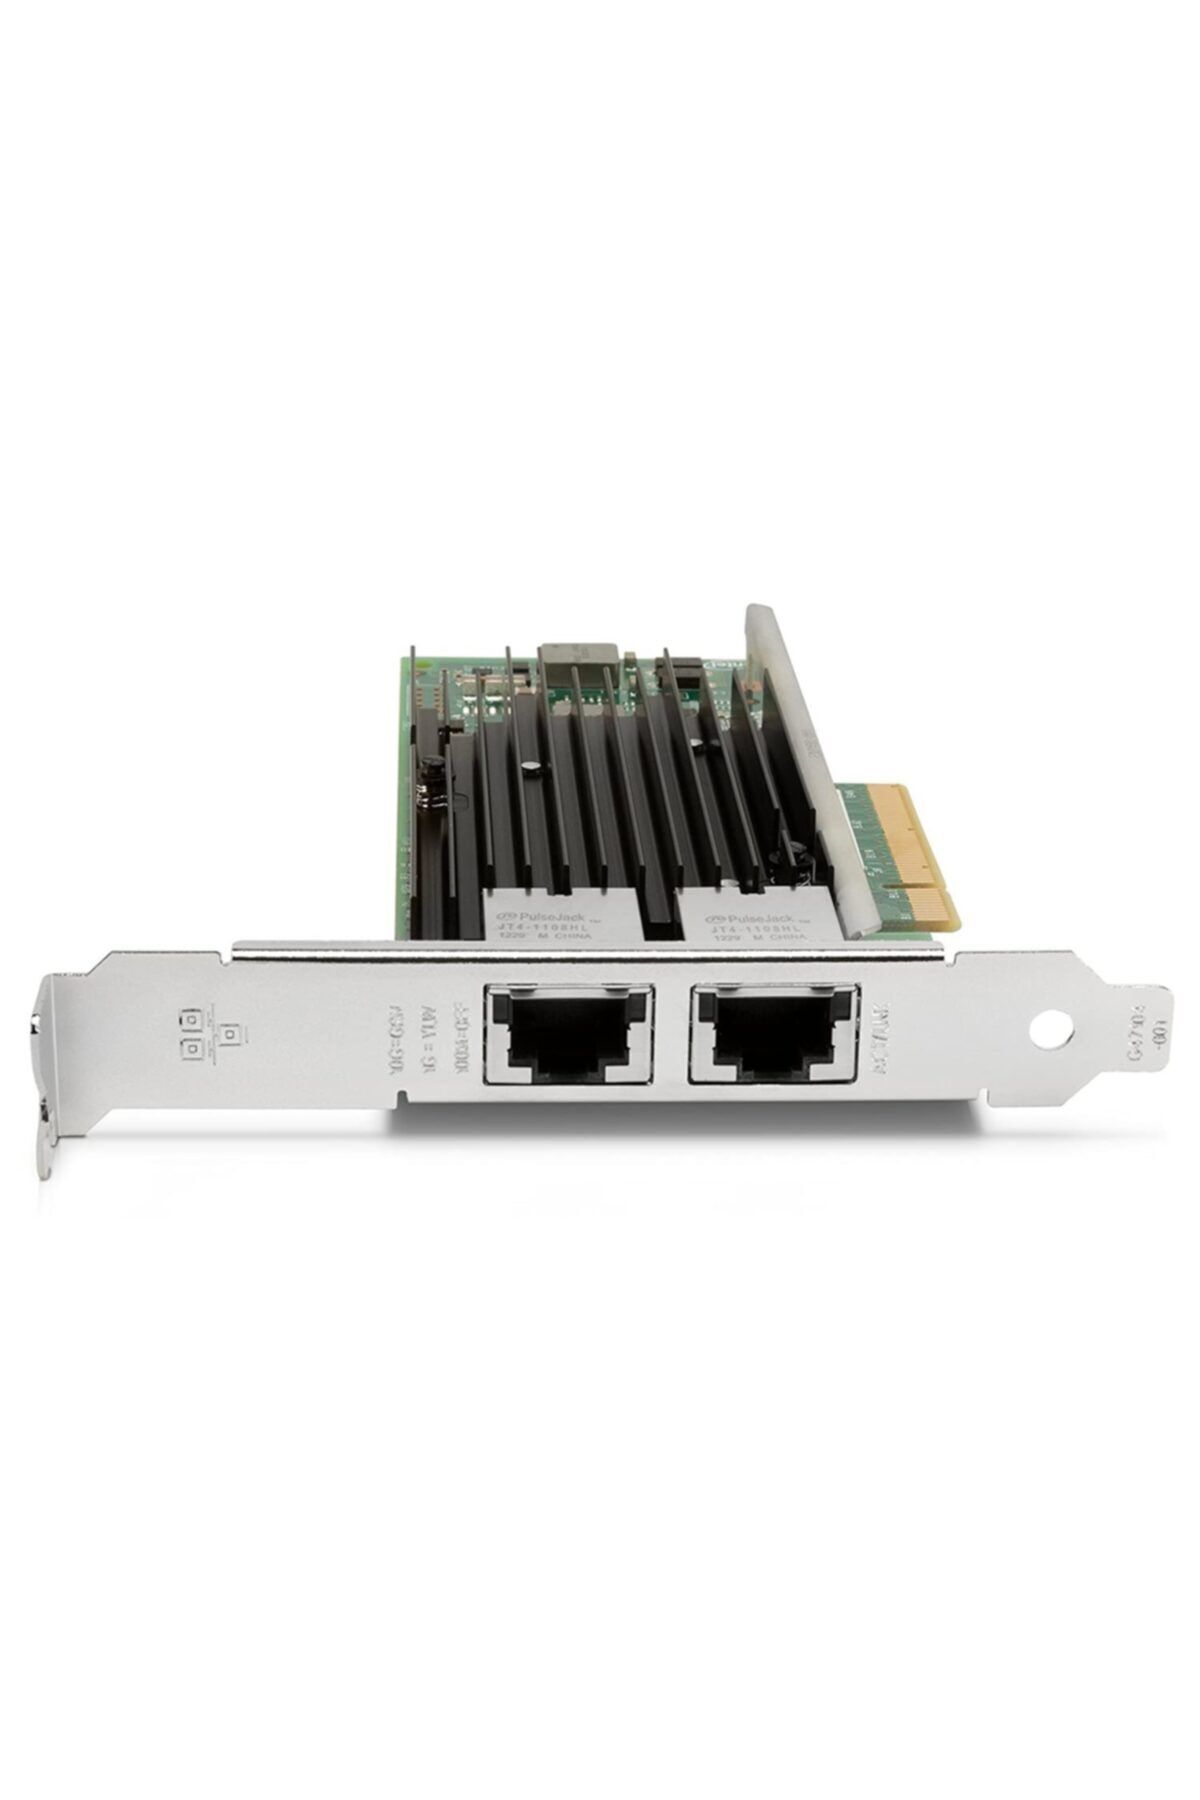 HP K4t75aa Intel X540-t2 Dual / 2 Port 10gbe Nic Network Adapter